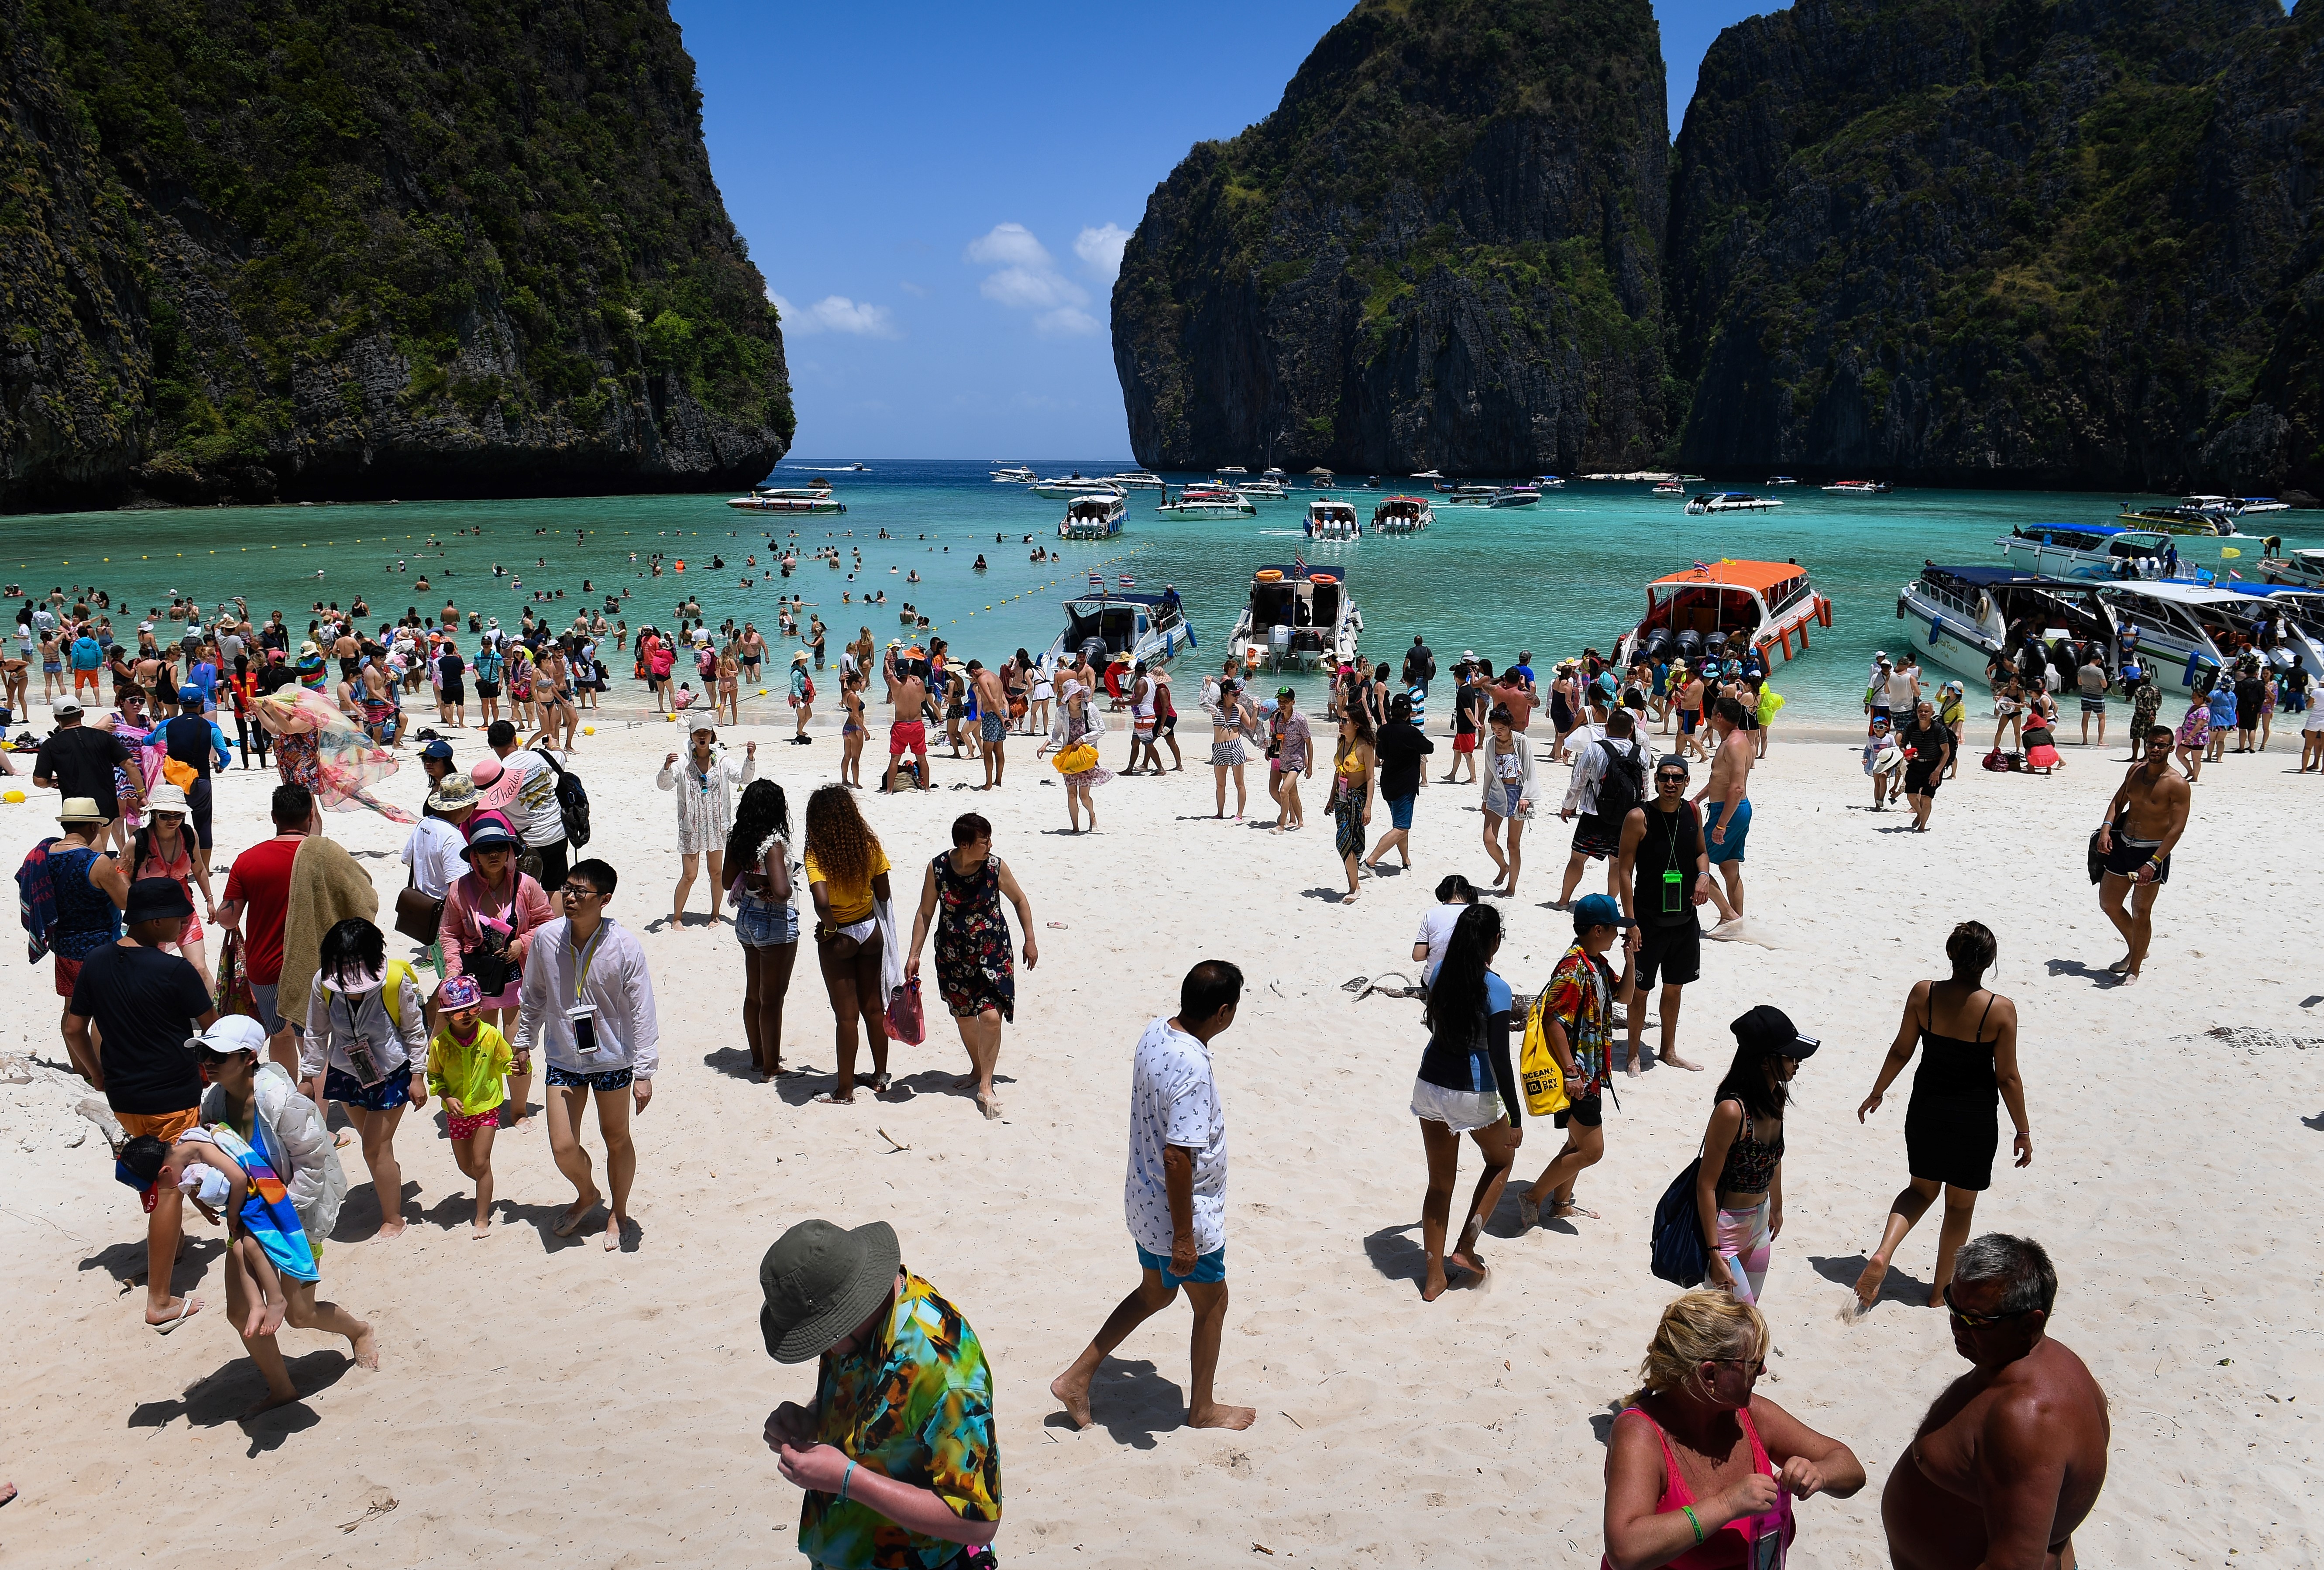 A turistadömping miatt 2021-ig lezárják a thaiföldi öblöt, amit Leonardo DiCaprio tett túl híressé